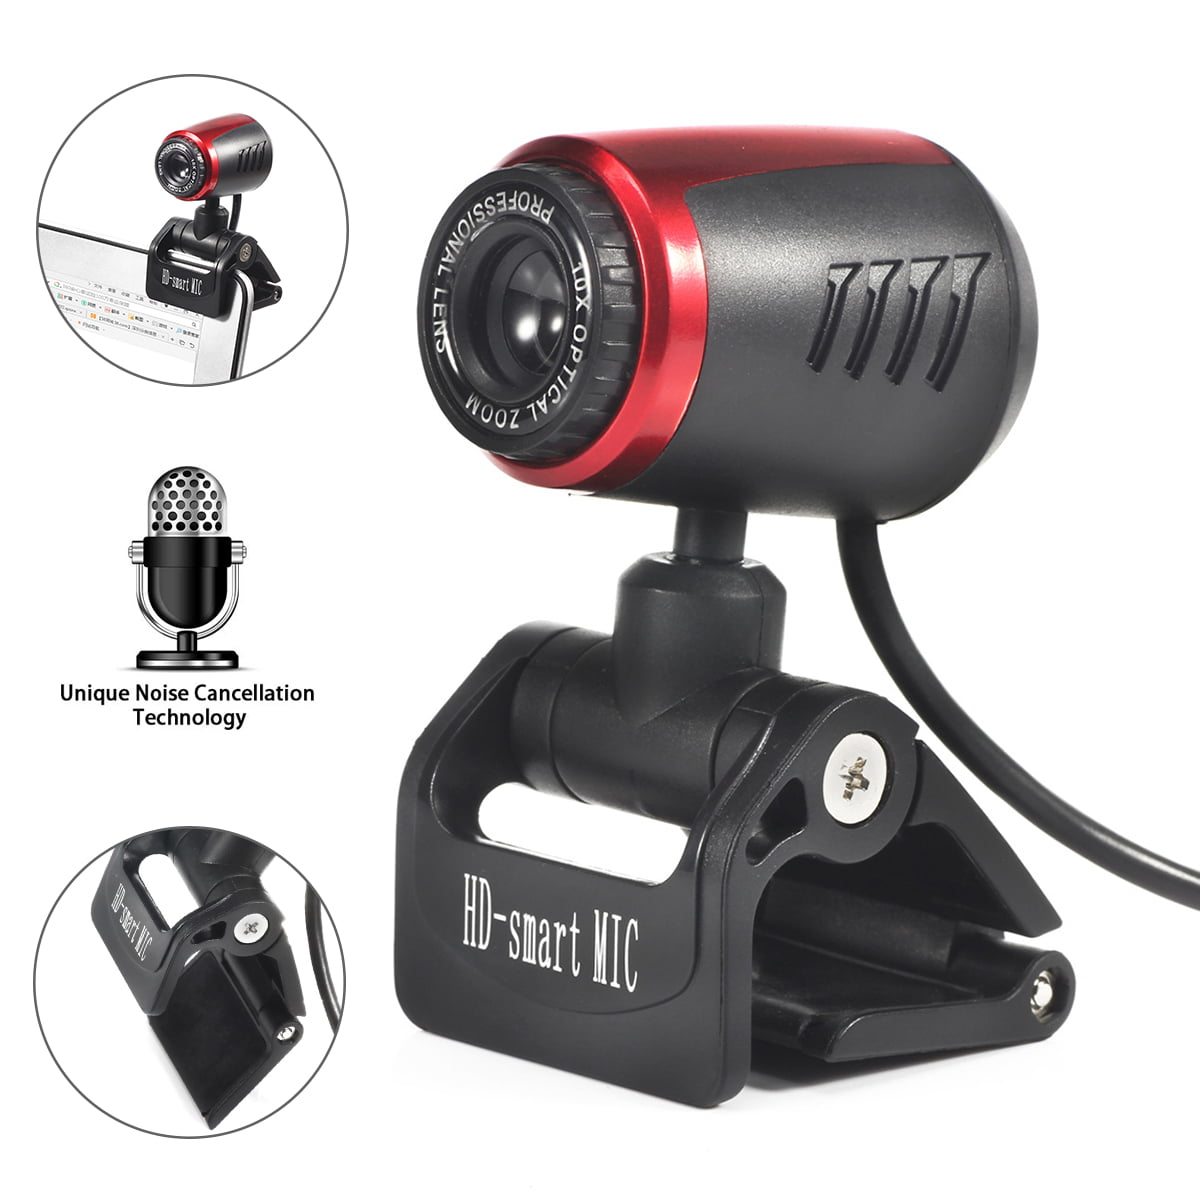 Full HD Webcam 1080p Caméra USB 3.0 2.0 avec microphone pour PC Portable Ordinateur Mac 